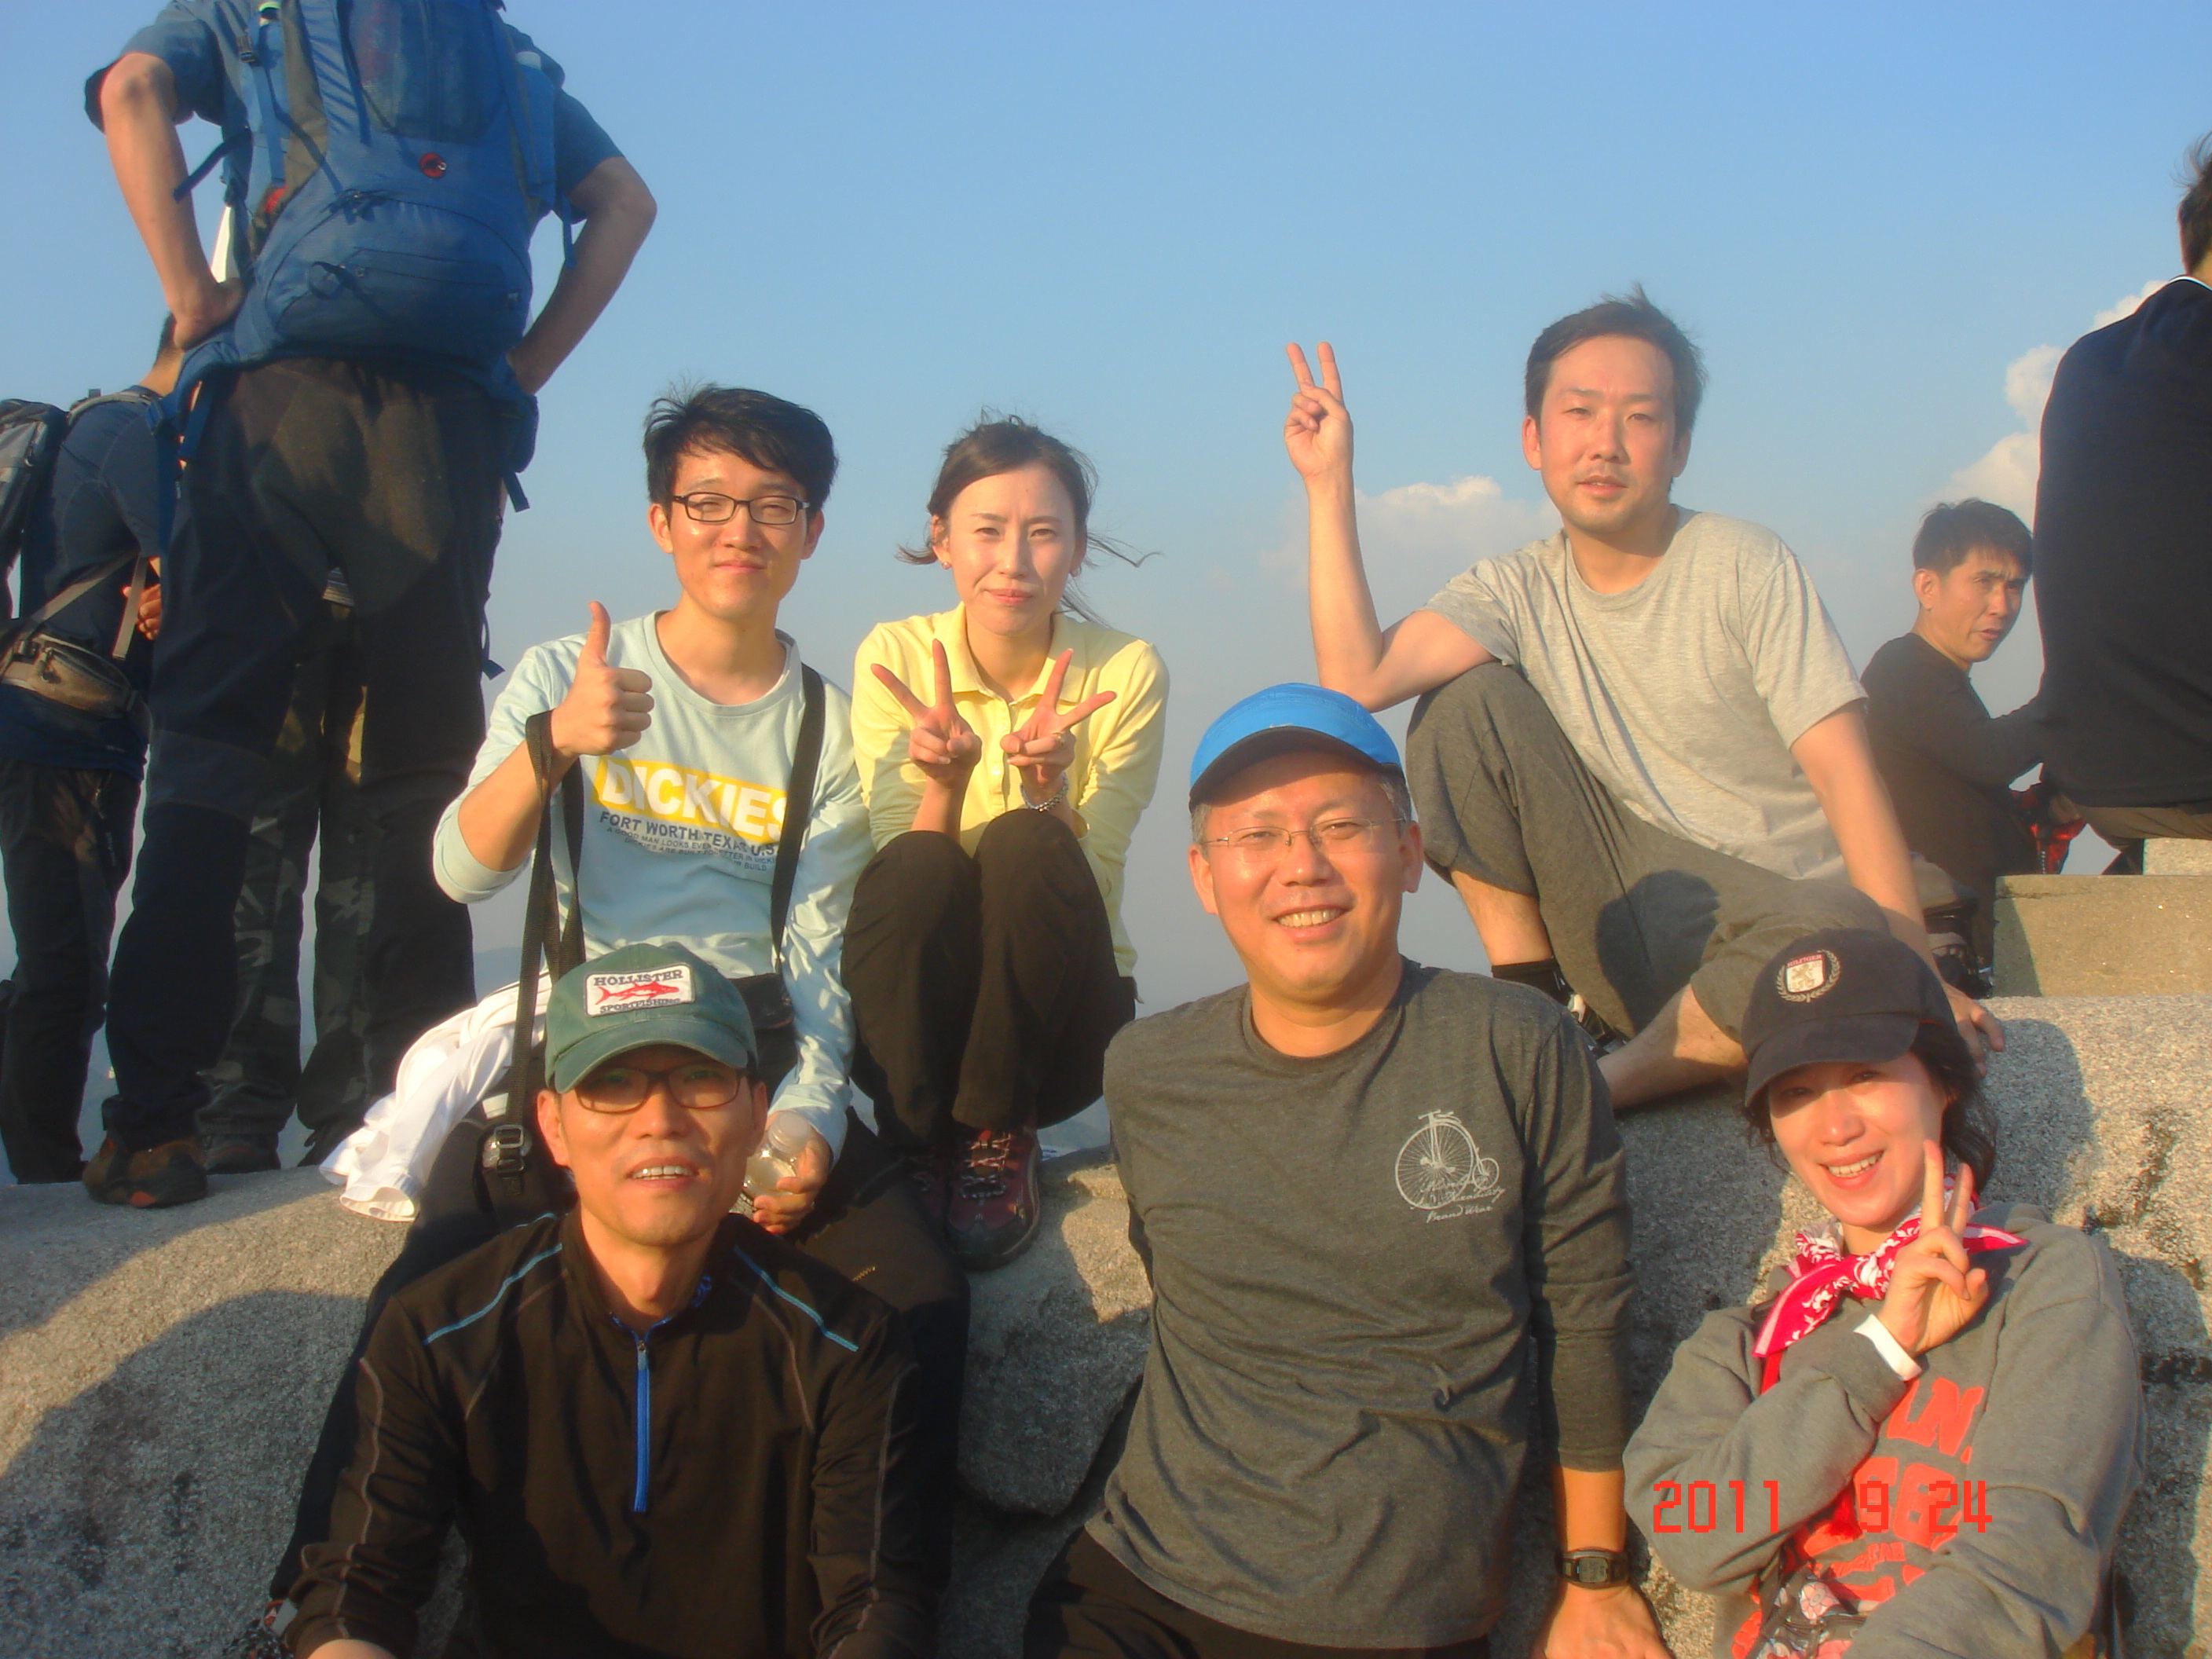 2011년 9월 24일 - 강북점 임직원 불암산 등반! 게시글의 1번째 첨부파일입니다.